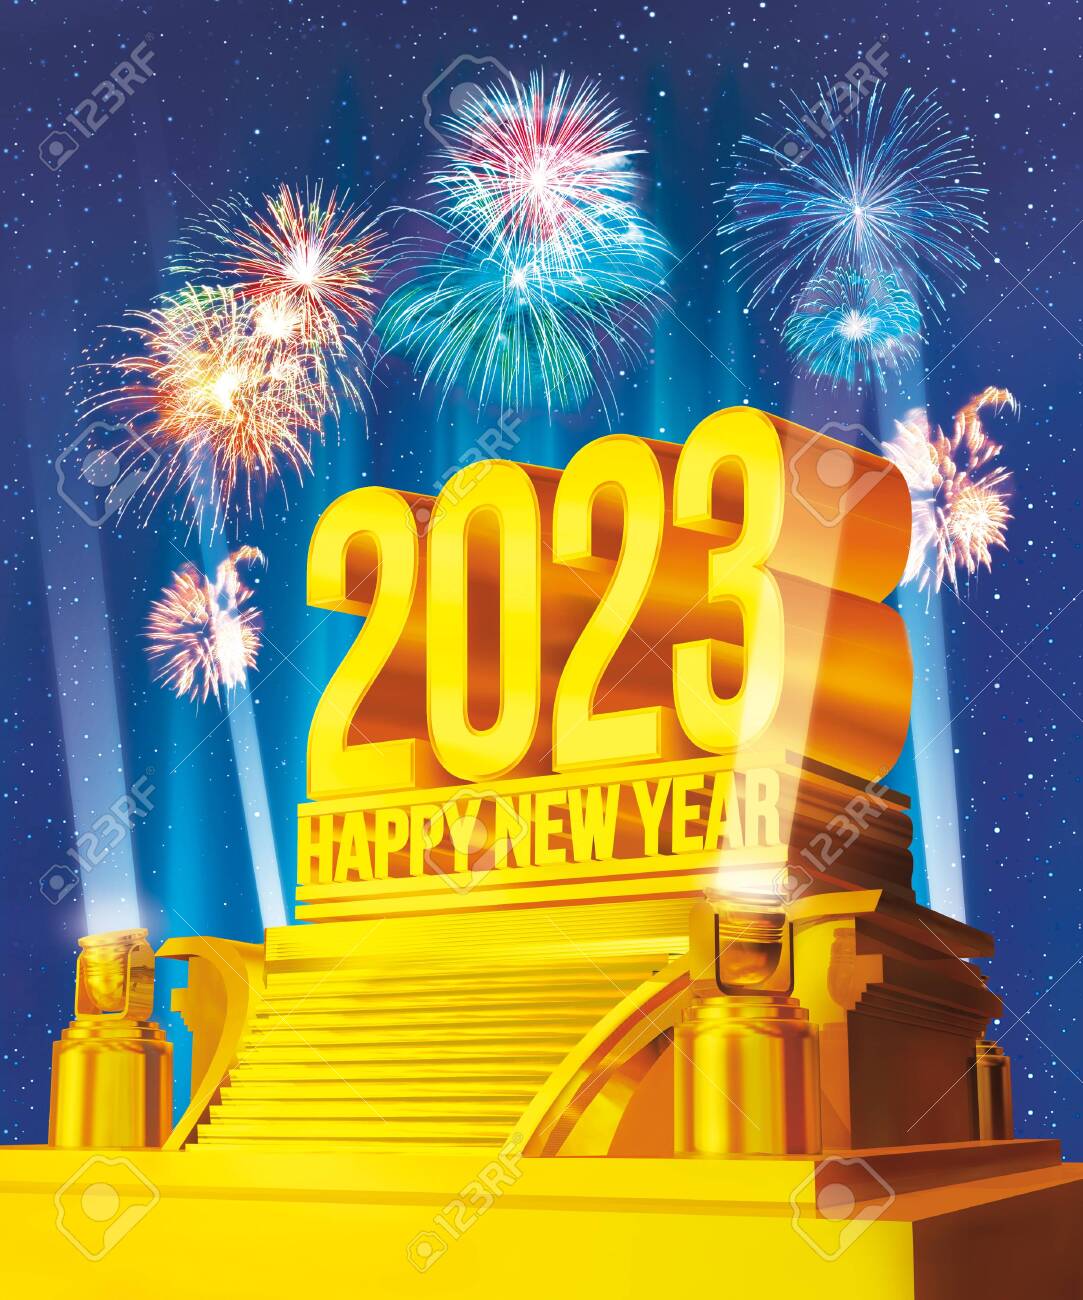 Новый год 2022